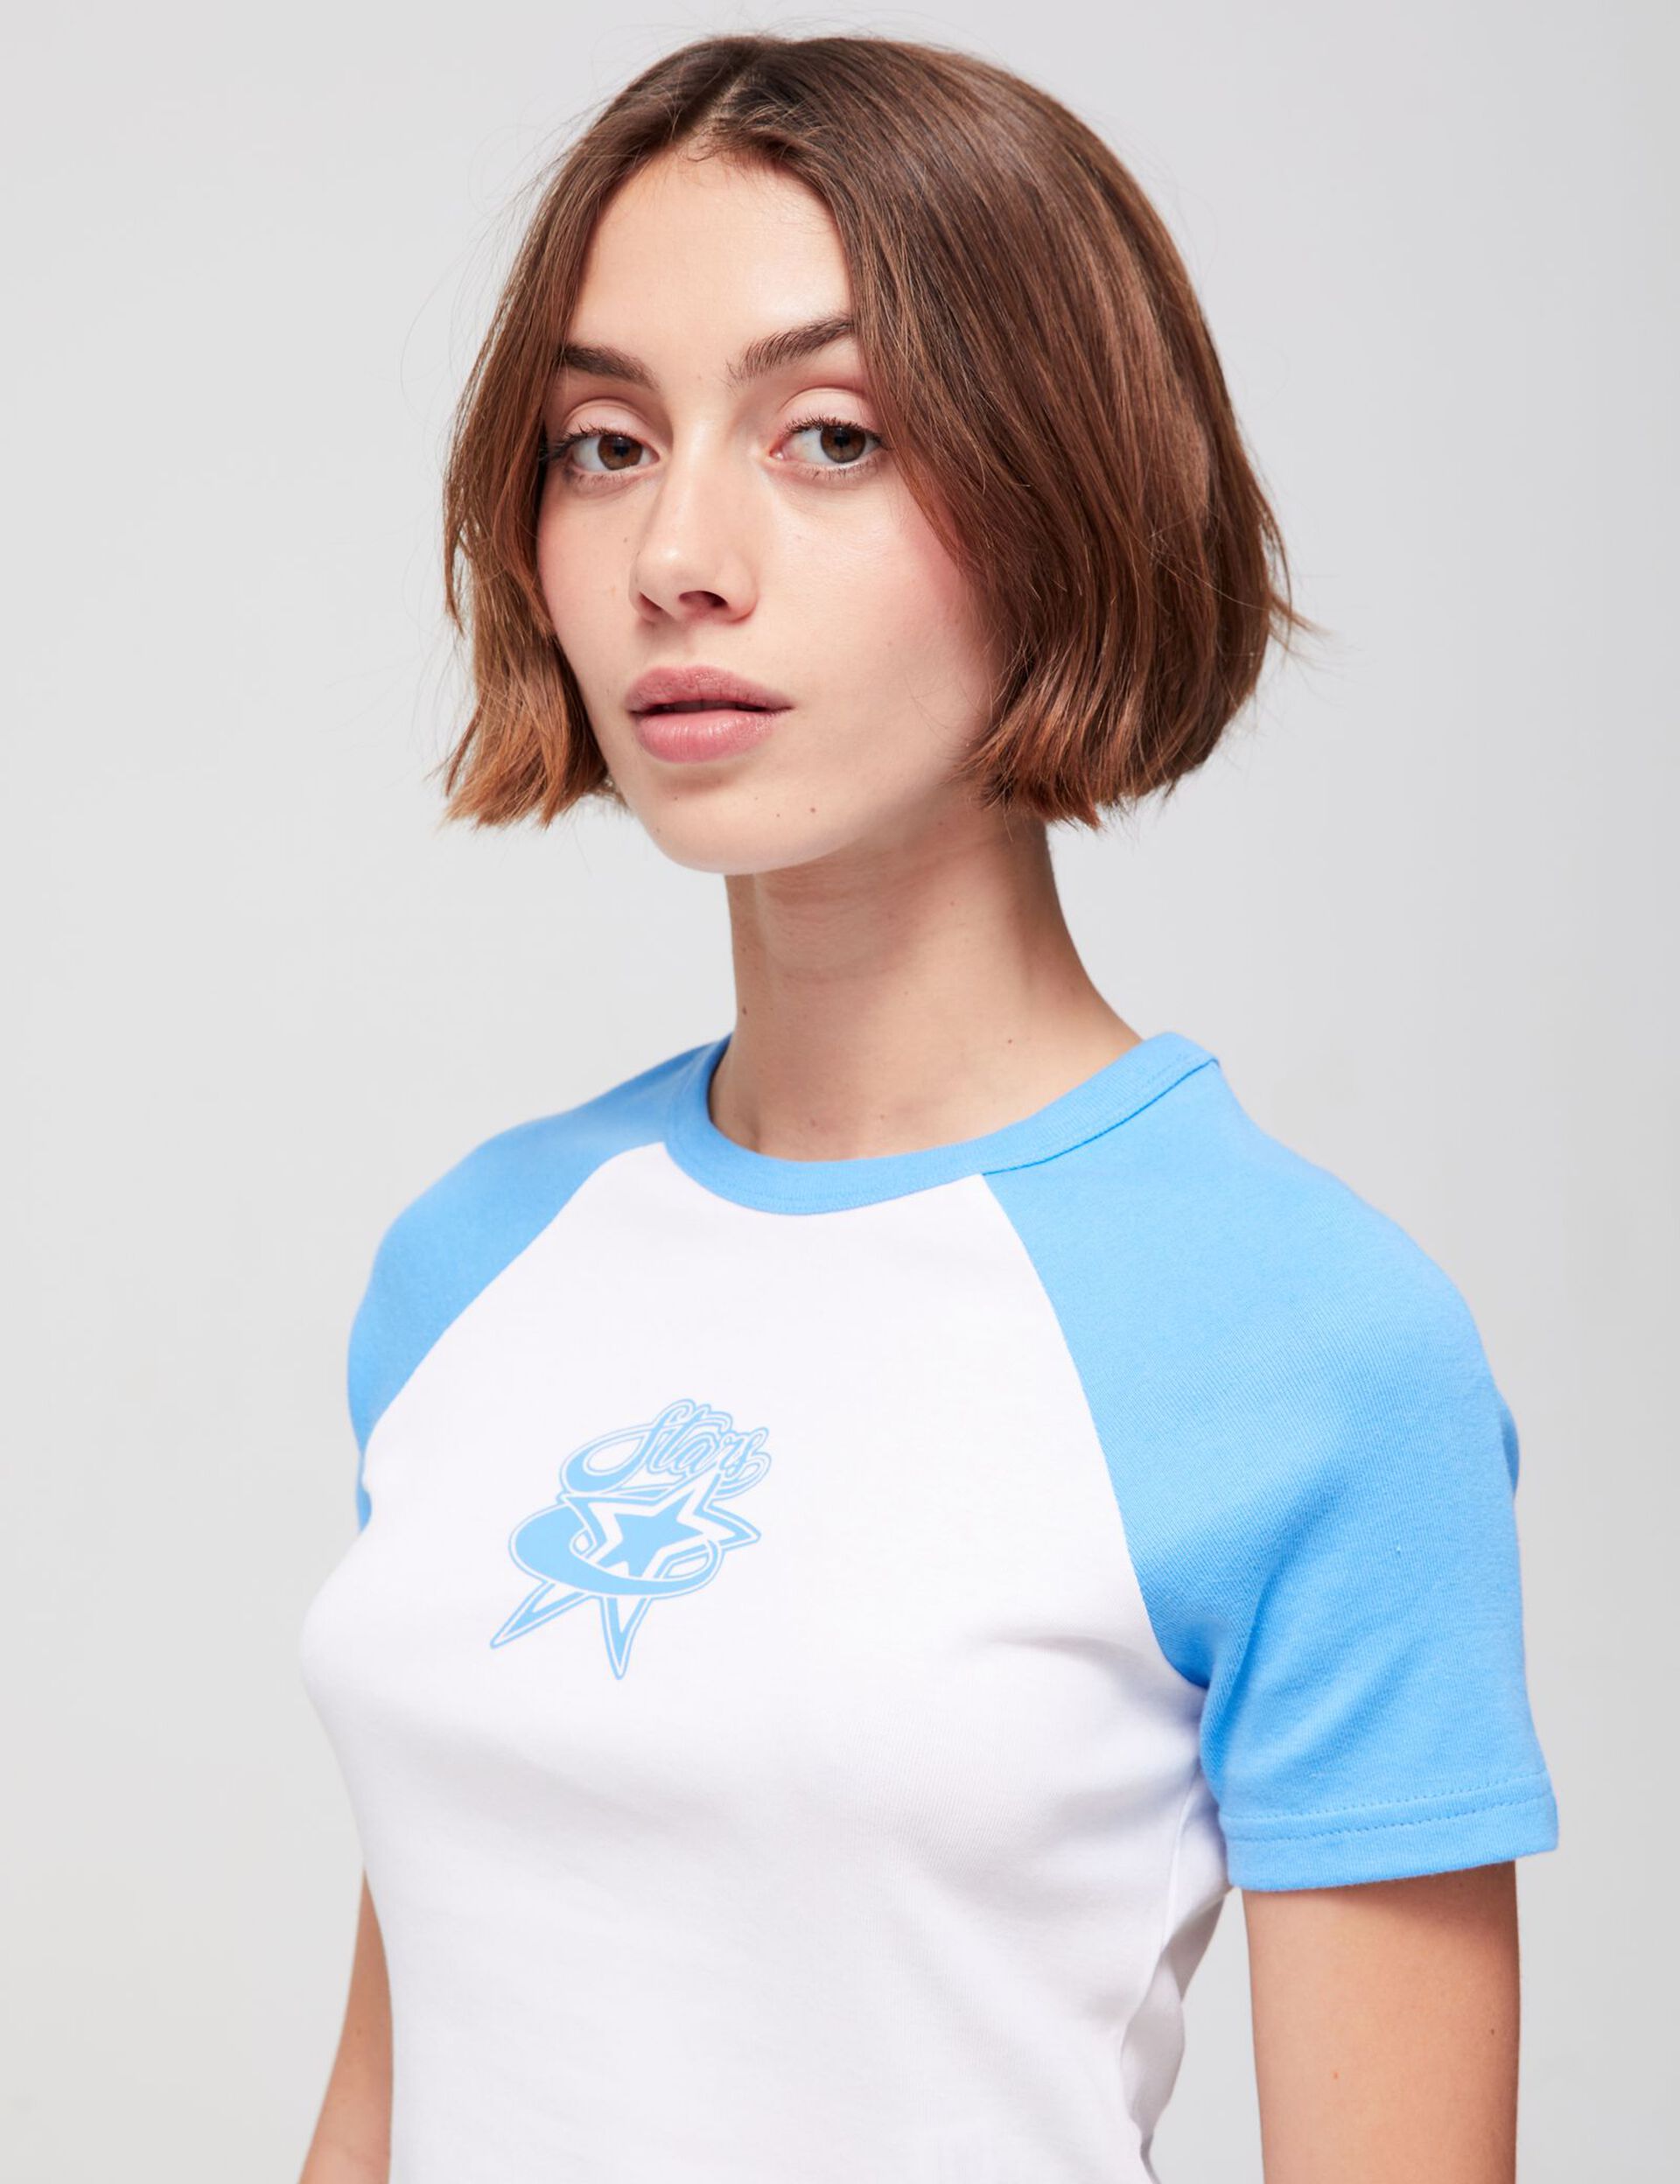 Tee-shirt star bleu et blanc